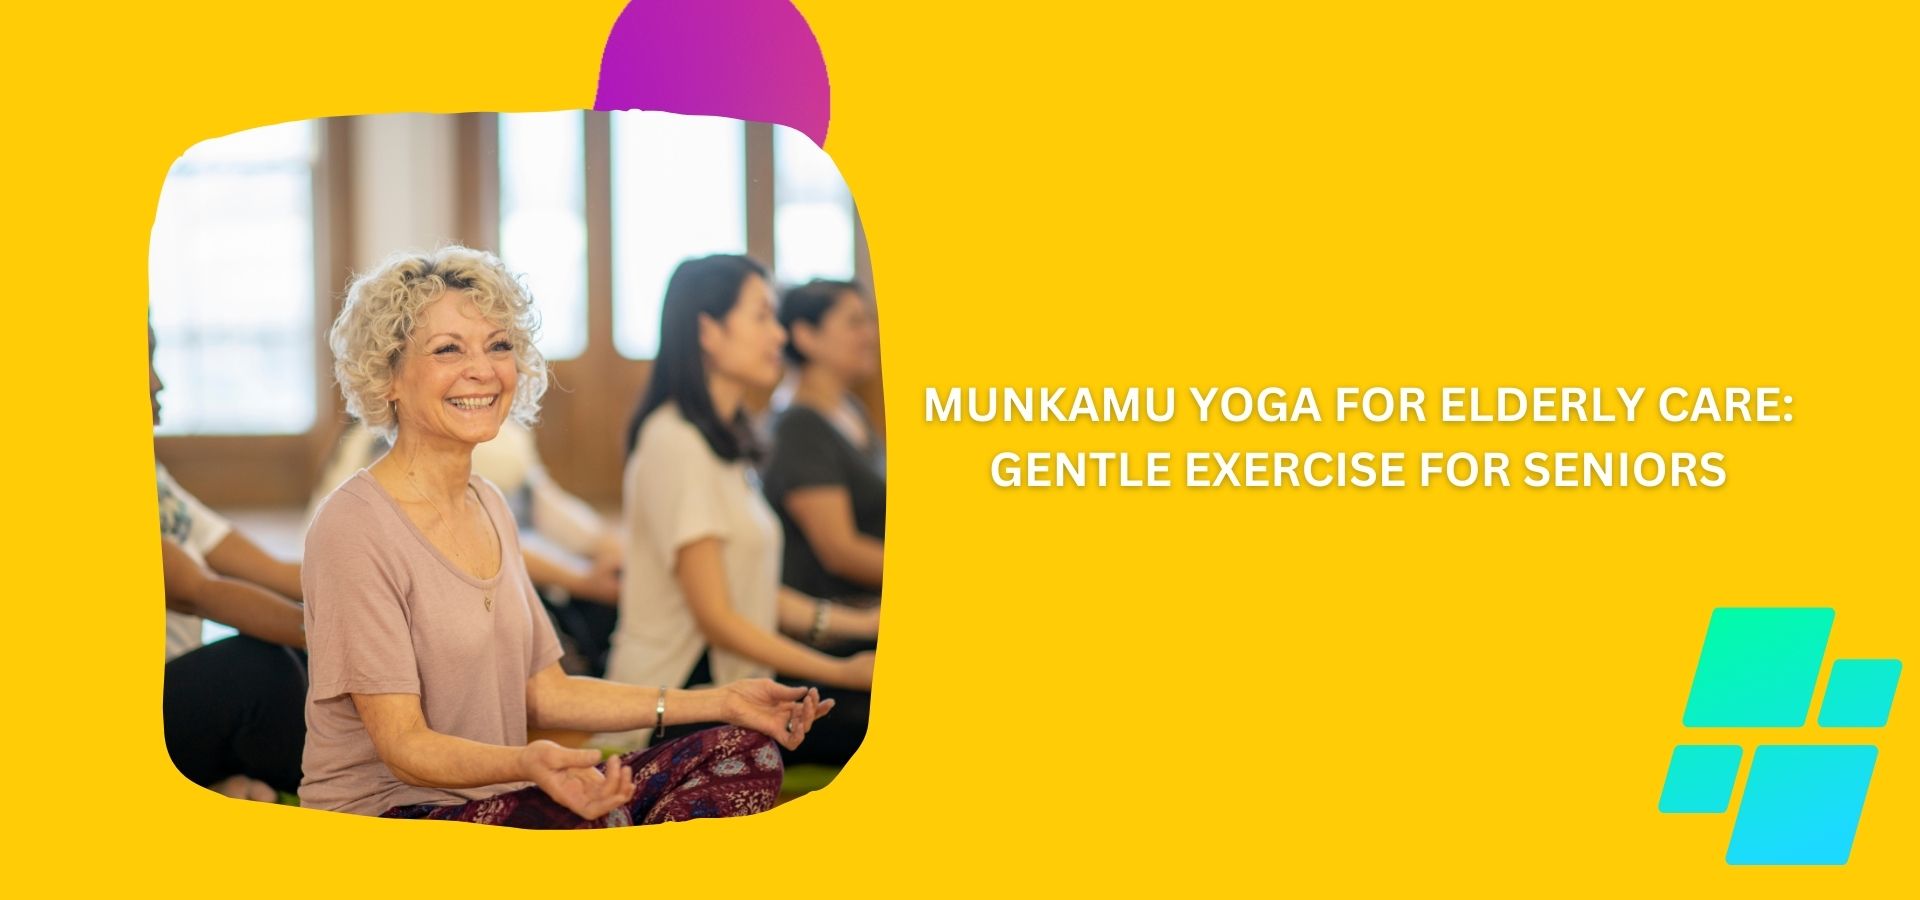 MunKamu Yoga for Elderly Care: Gentle Exercise for Seniors